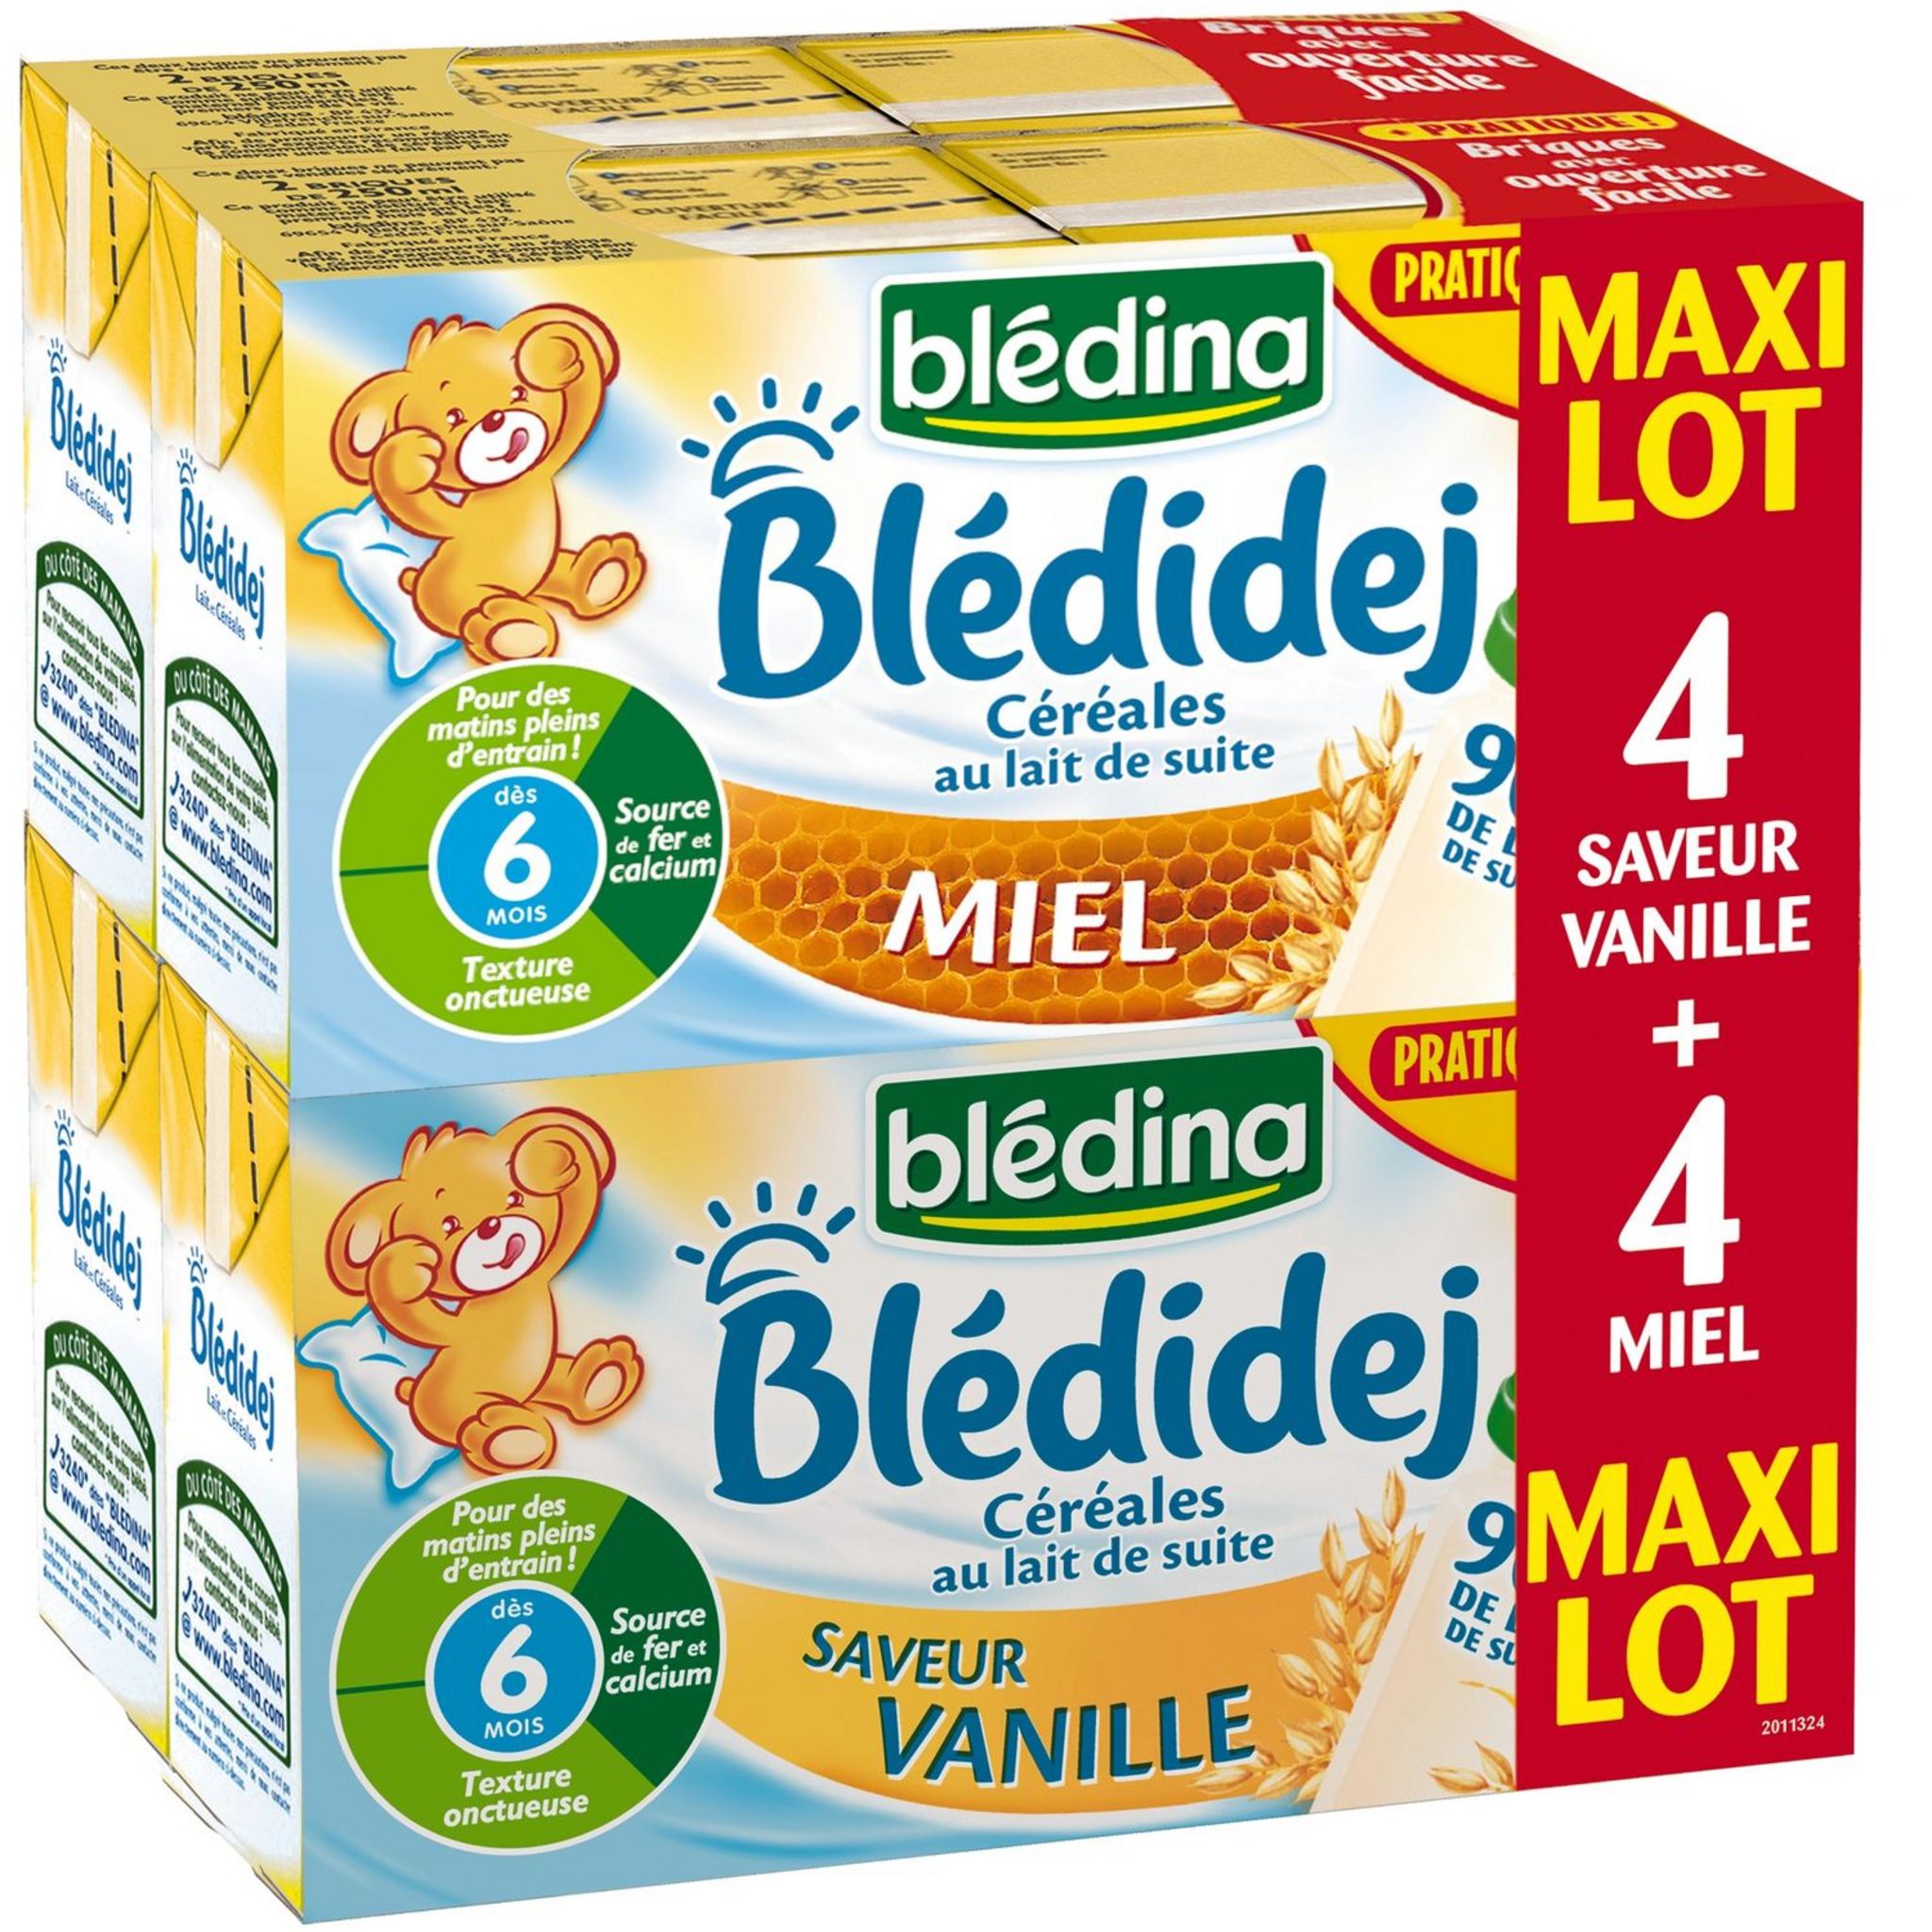 BLEDINA Blédidej vanille et miel 8x25cl dès 6 mois prix choc pas